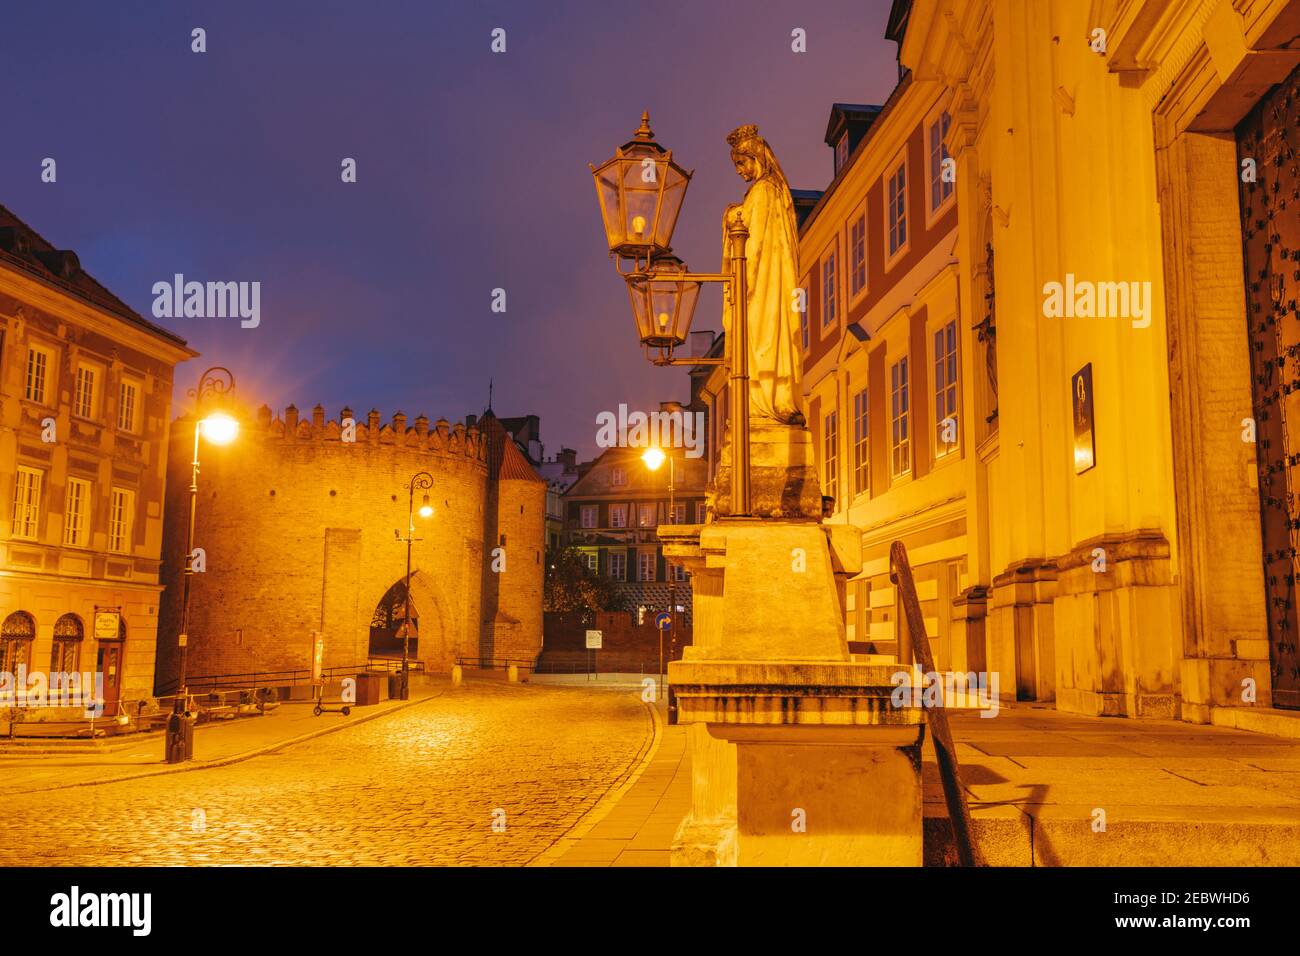 Old town of Warsaw. Warsaw, Masovia, Poland. Stock Photo